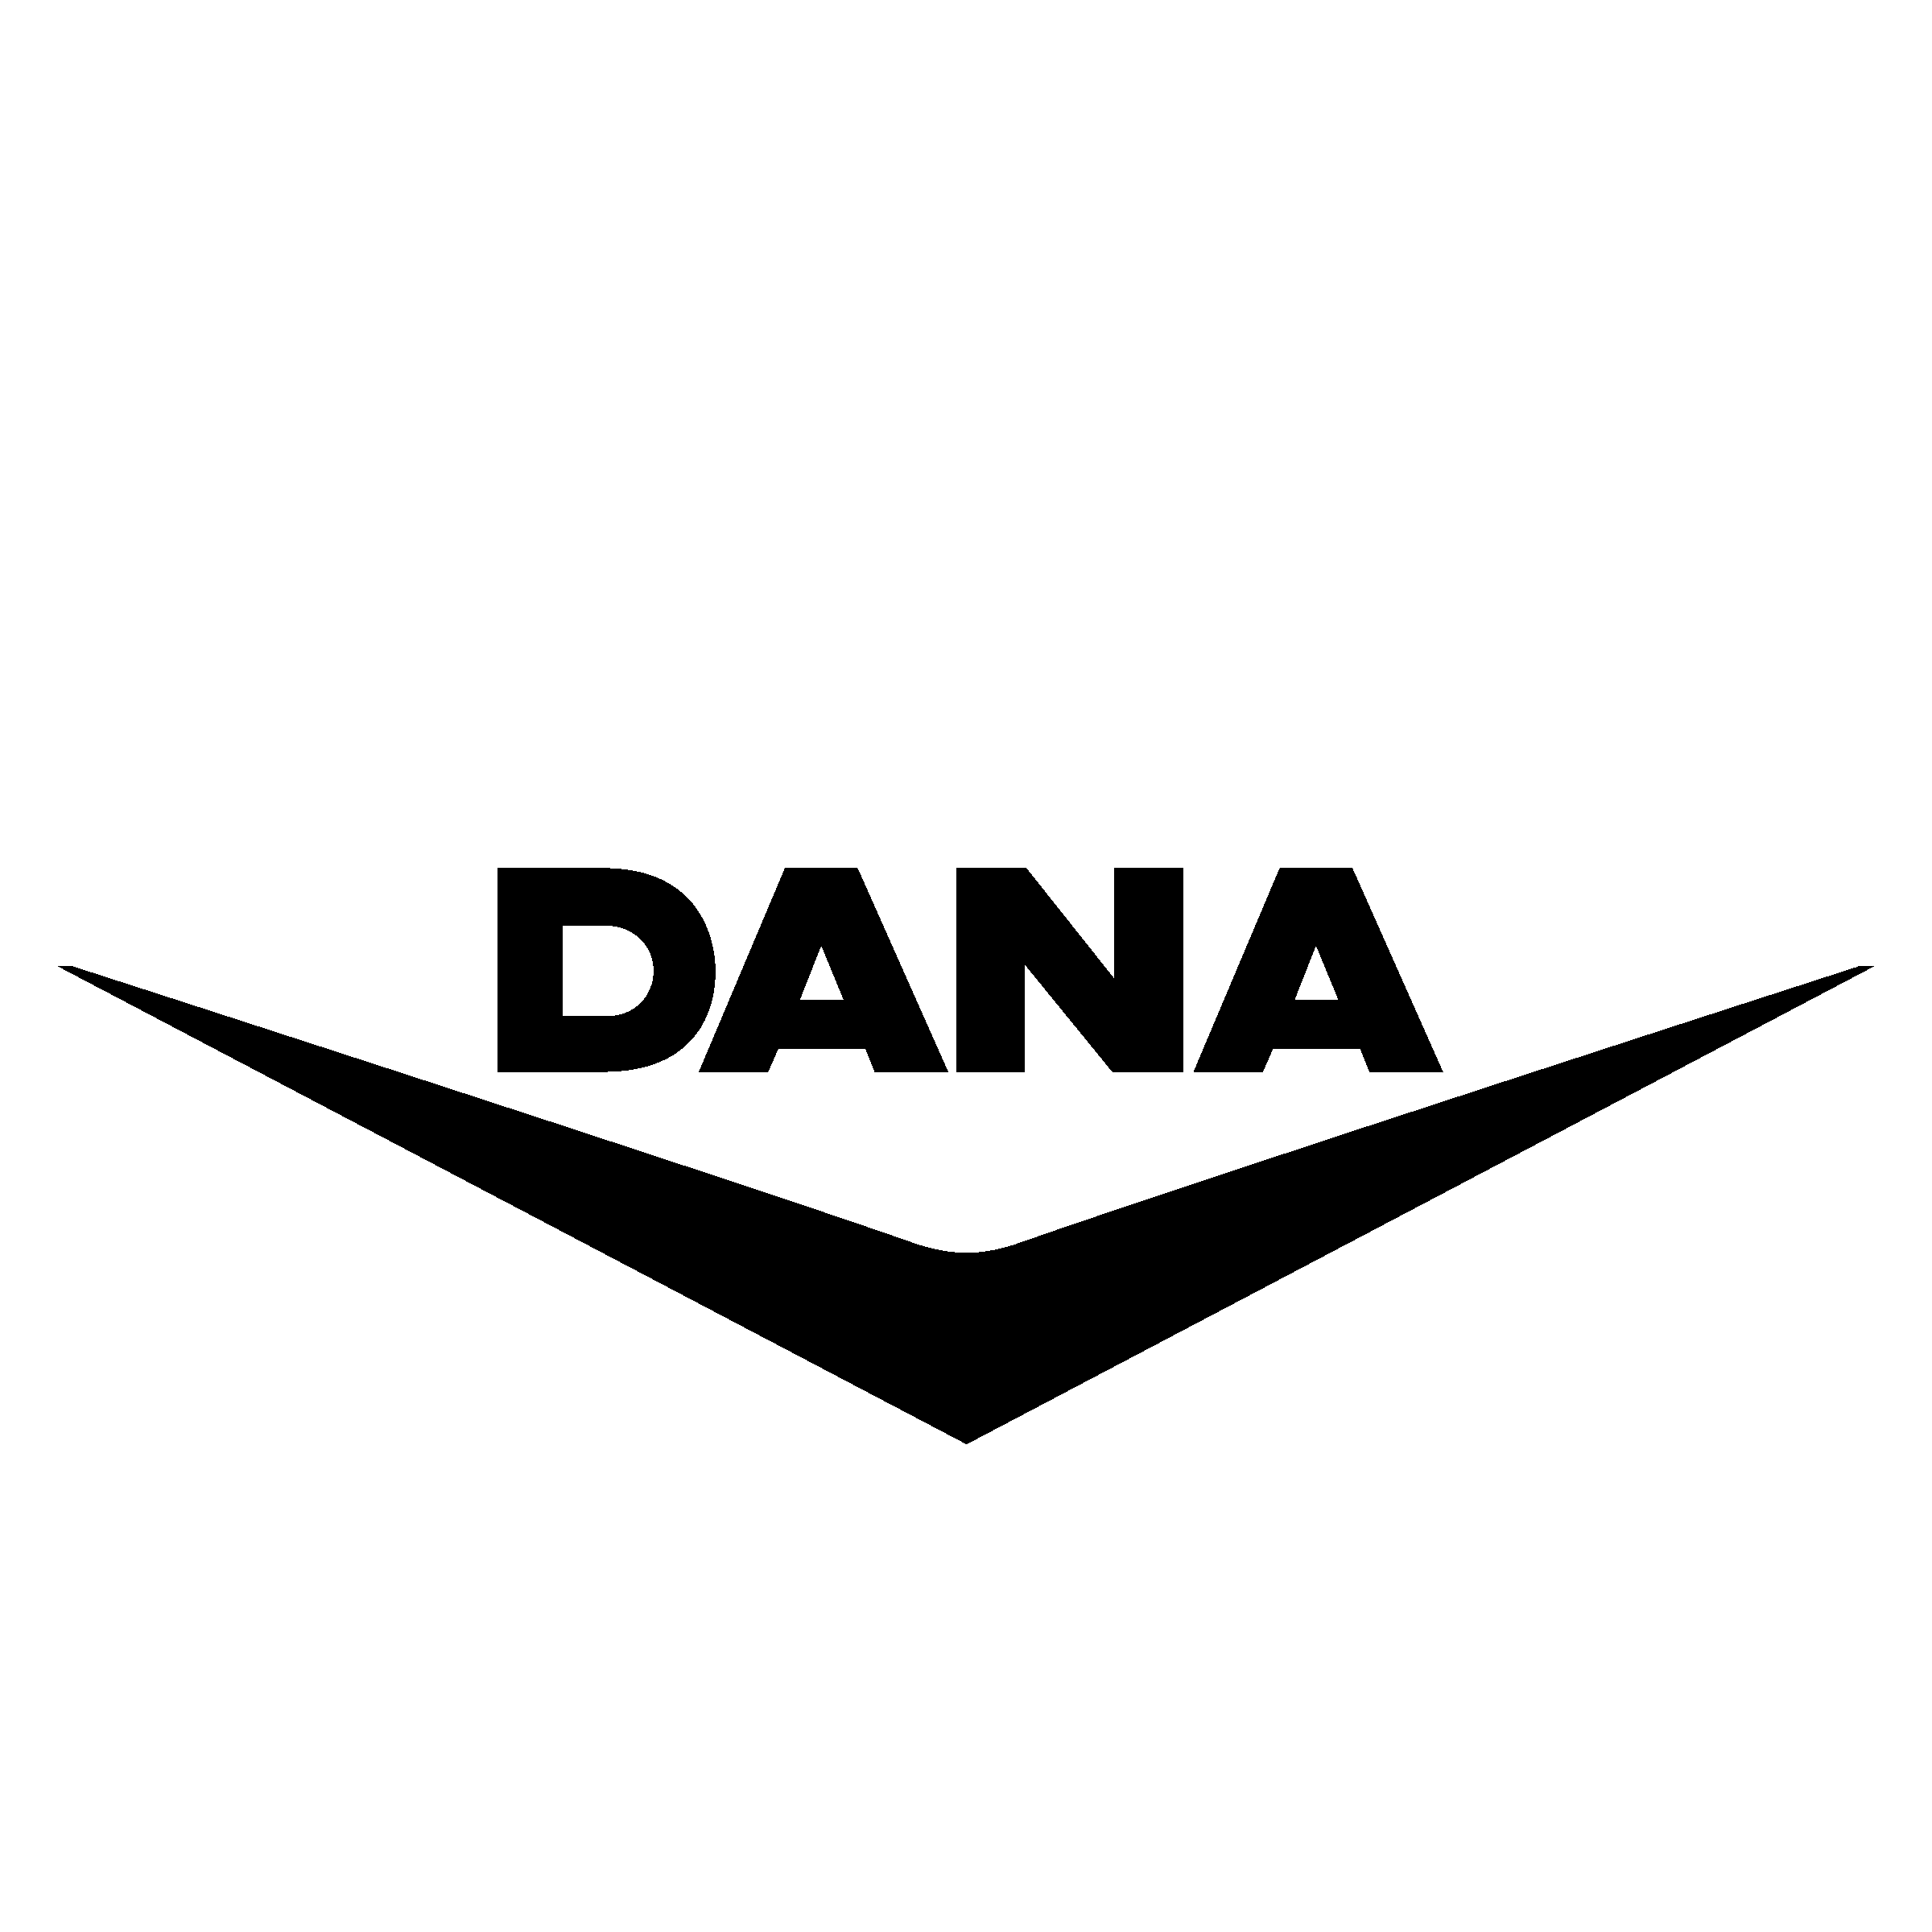 Dana Logo - Dana Logo PNG Transparent & SVG Vector - Freebie Supply